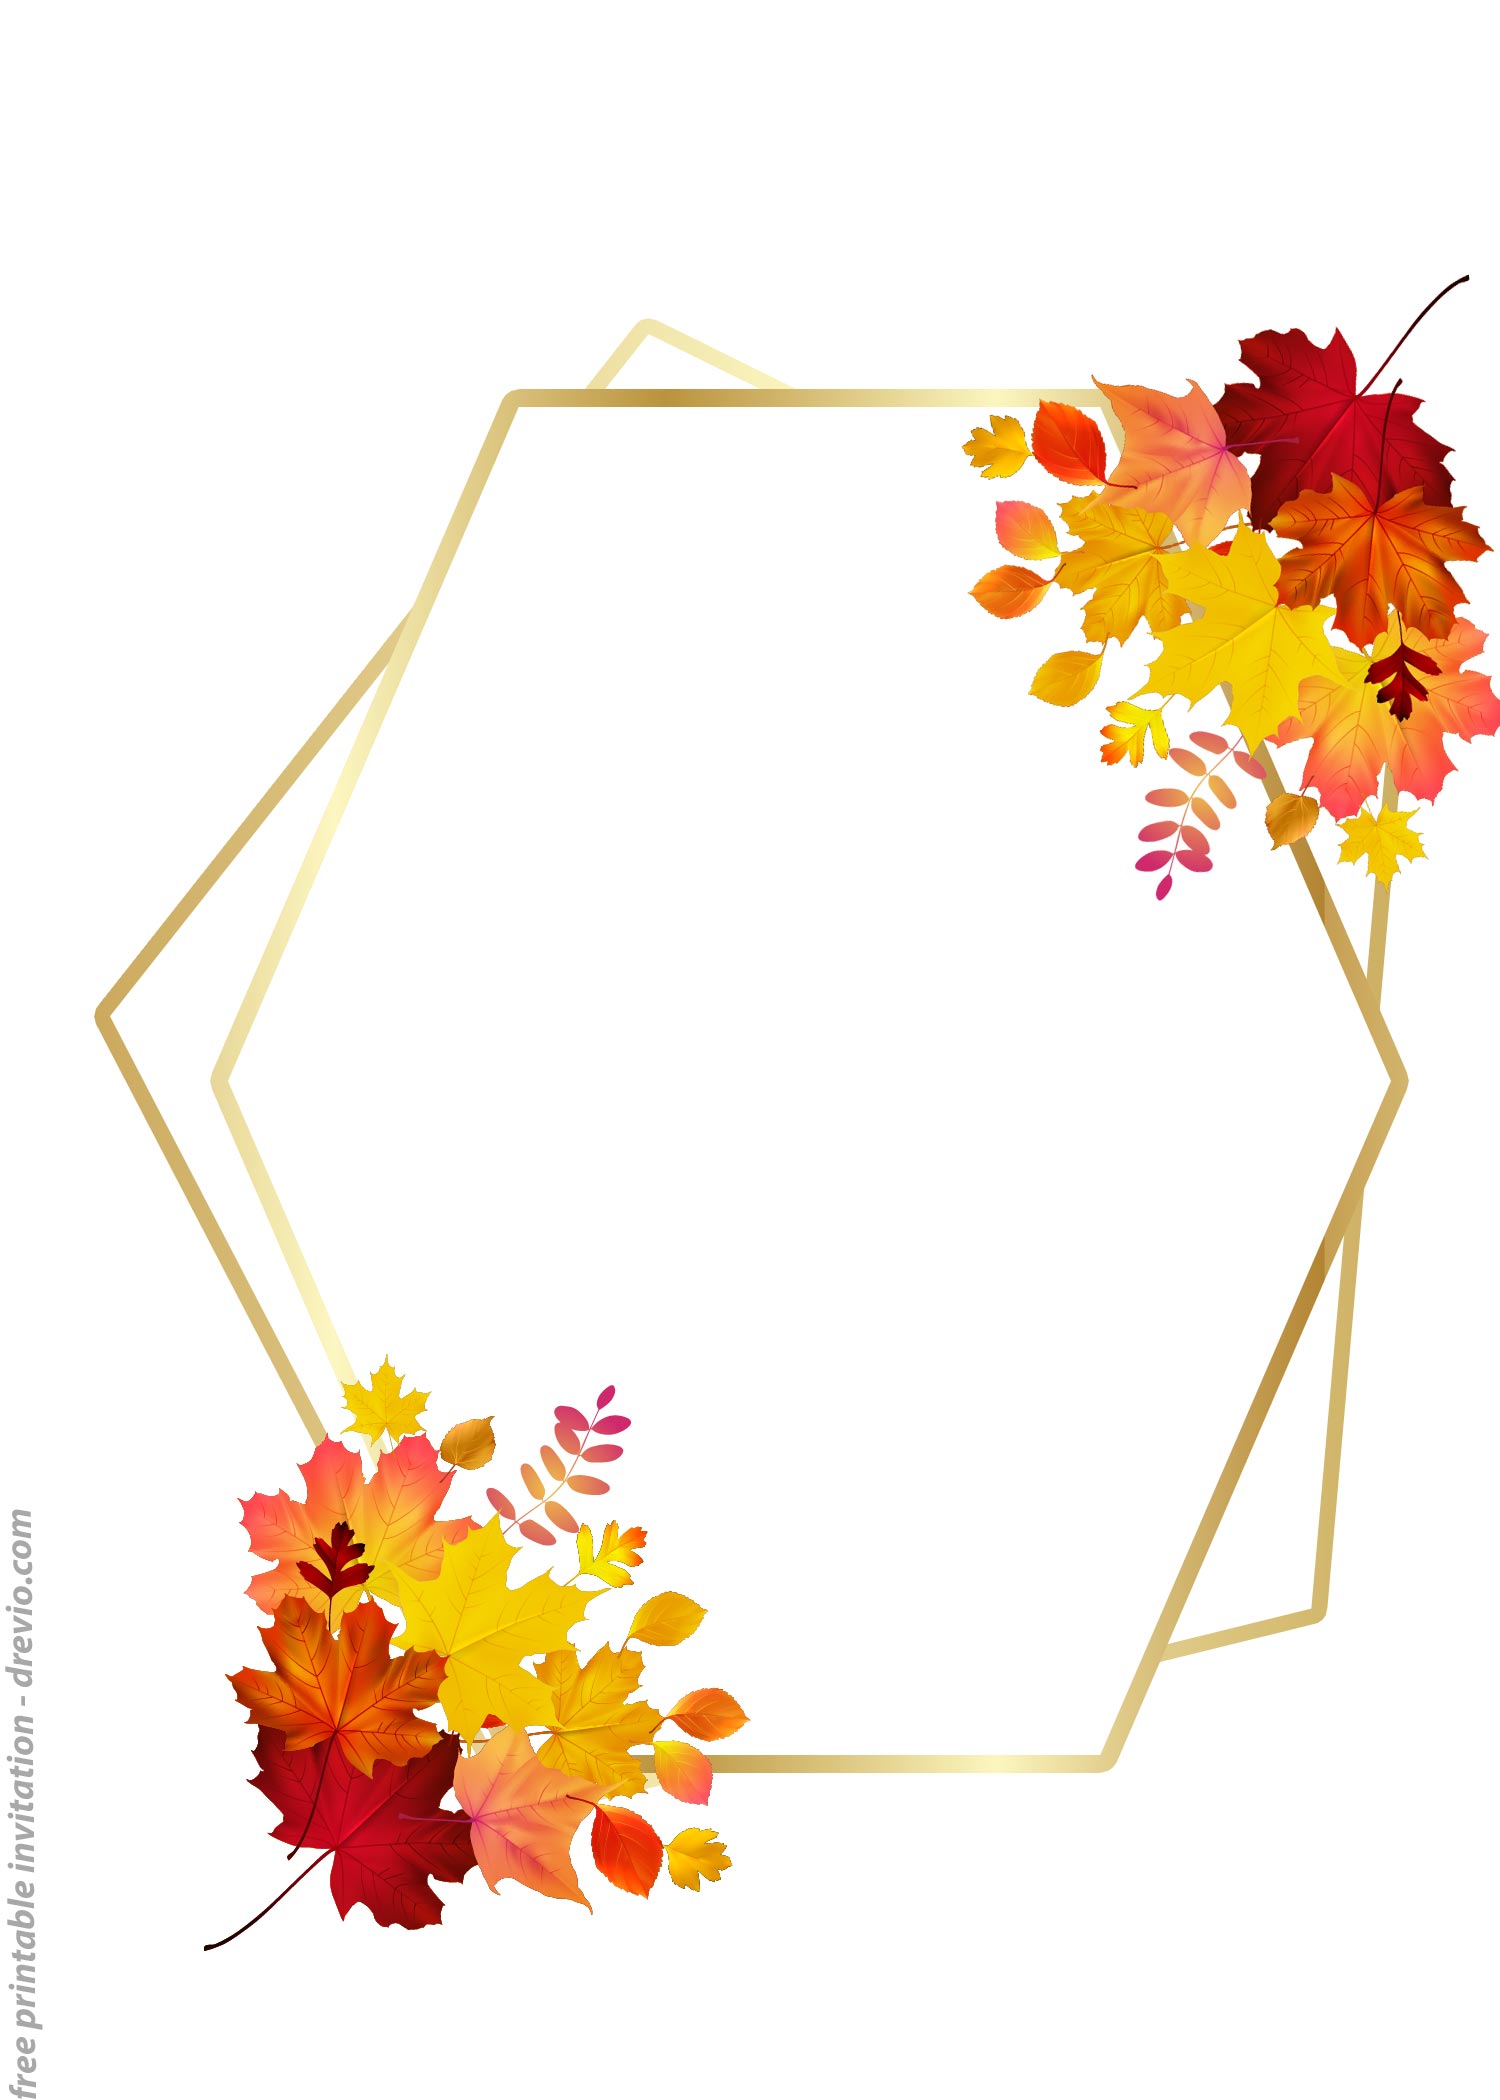 FREE-Printable-Floral-Maple-Leaves-Invitation-Templates